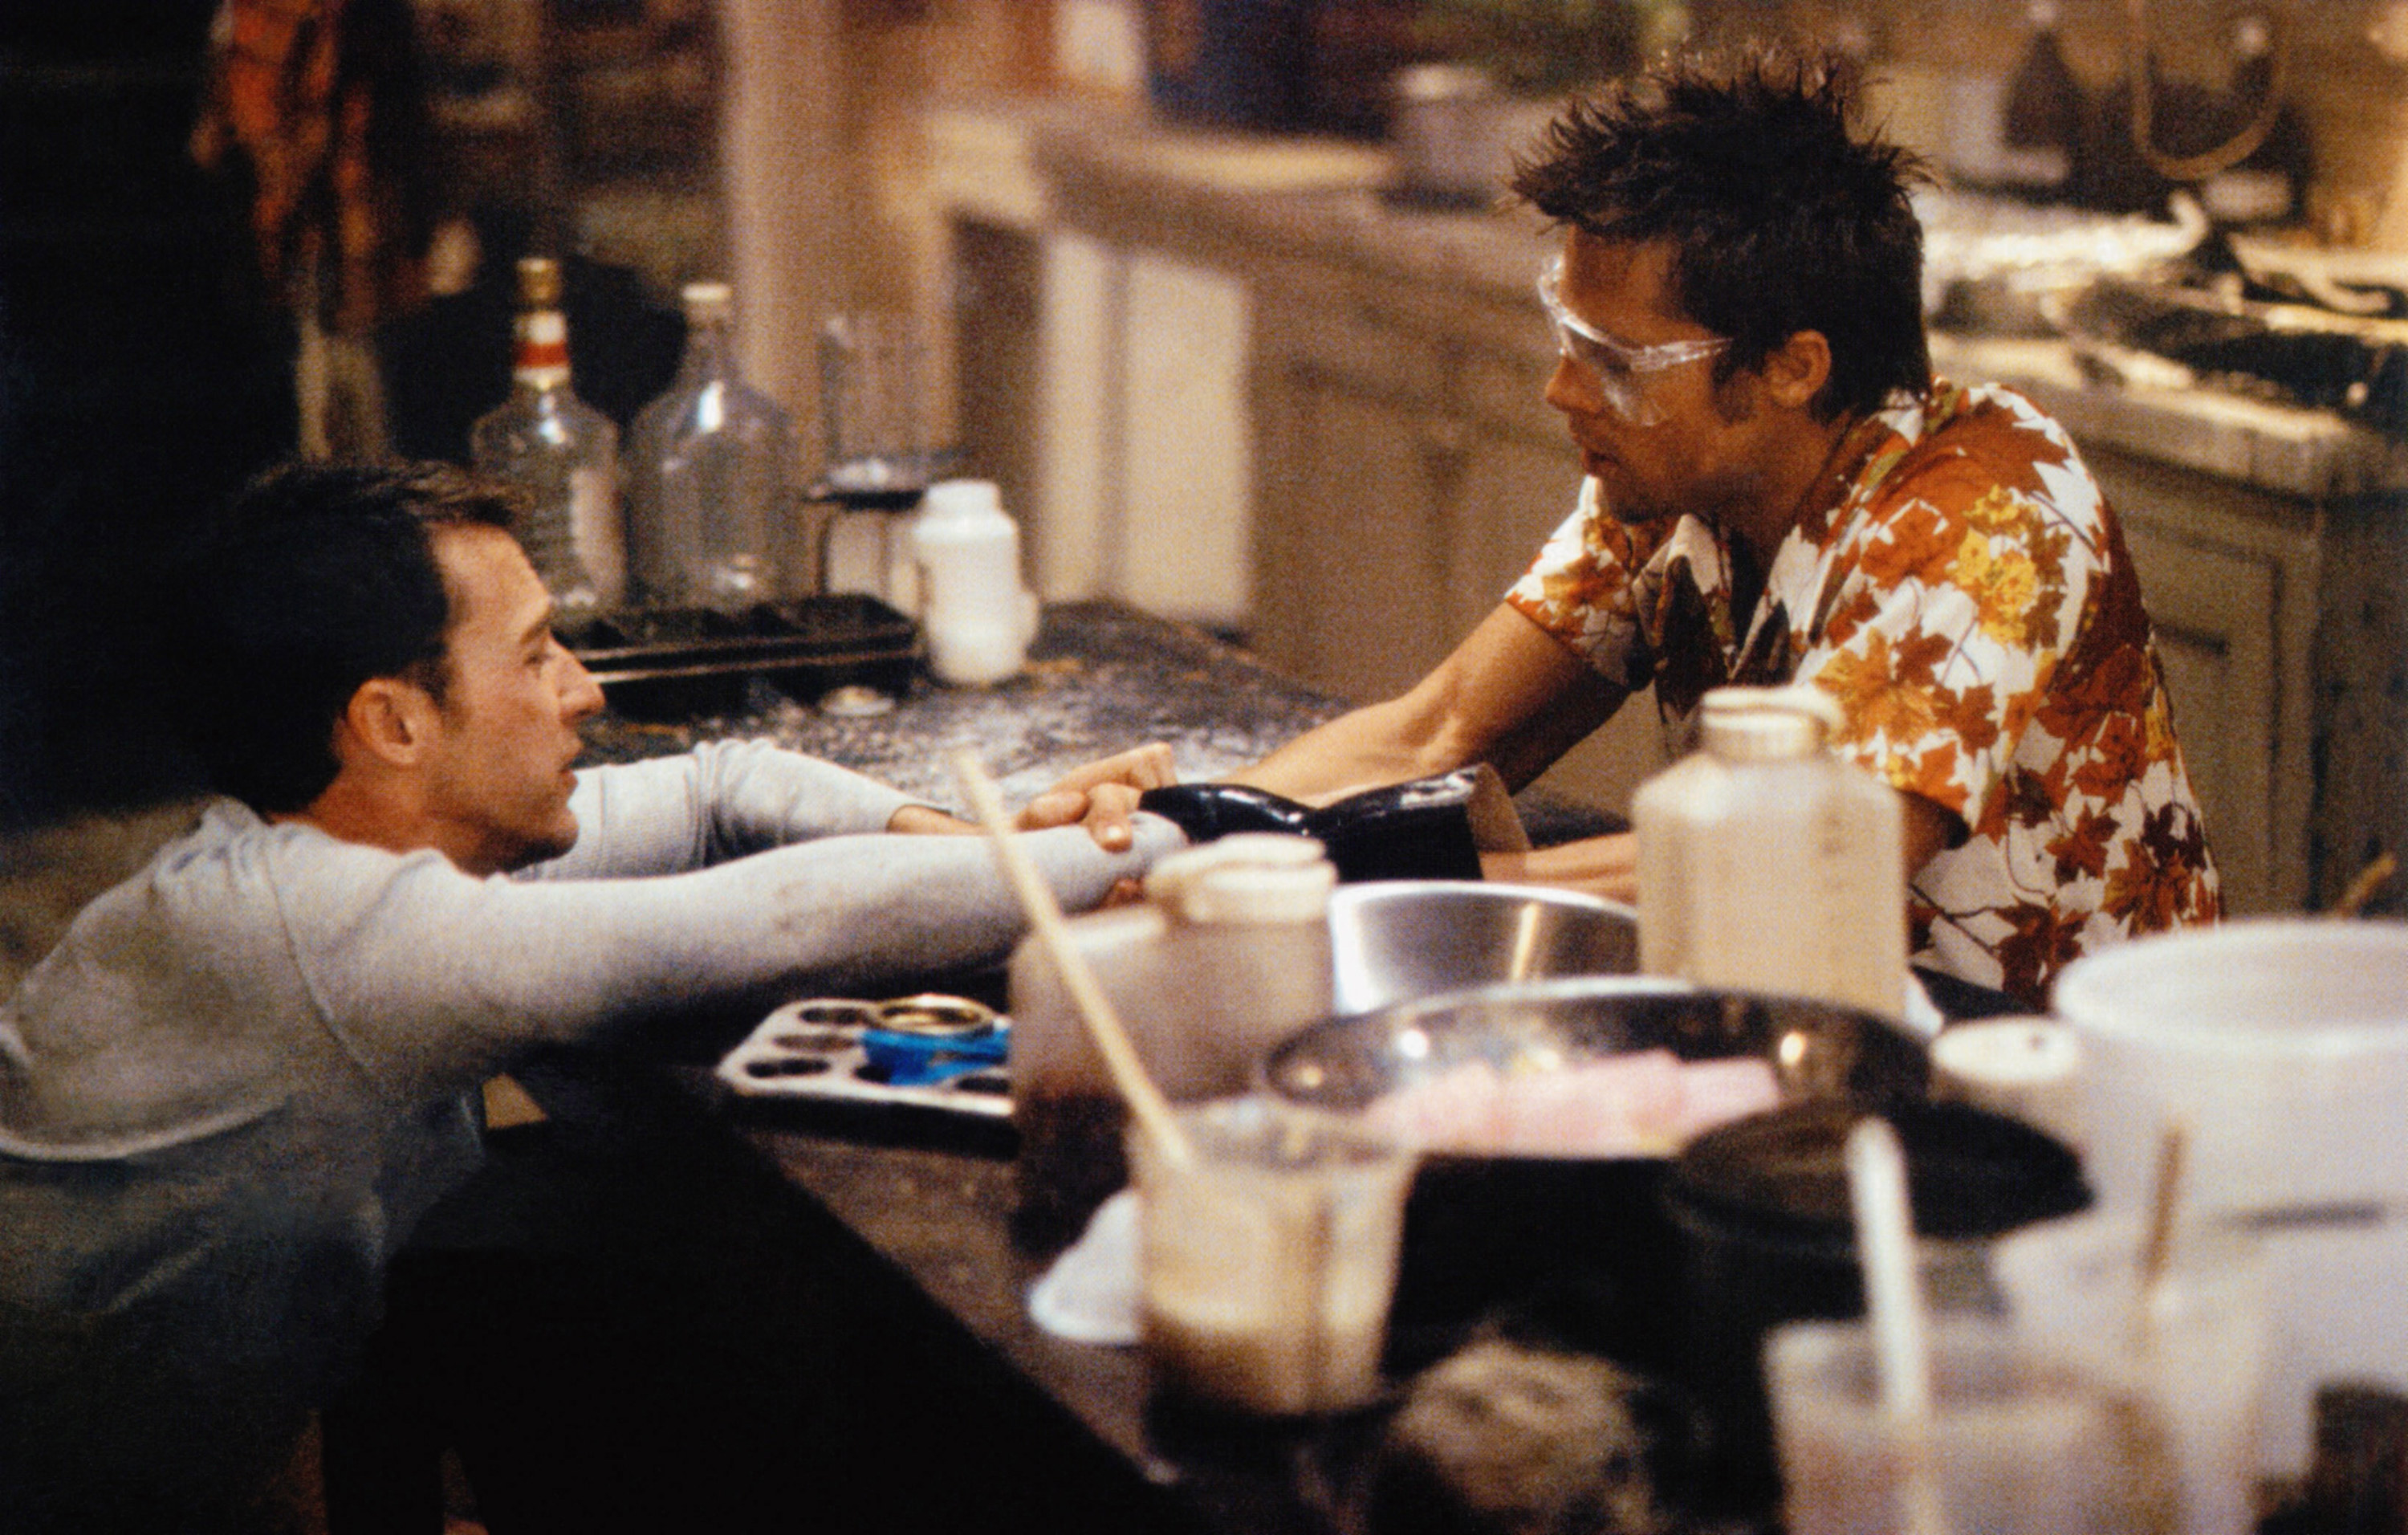 Edward Norton and Brad Pitt share a scene in Fight Club